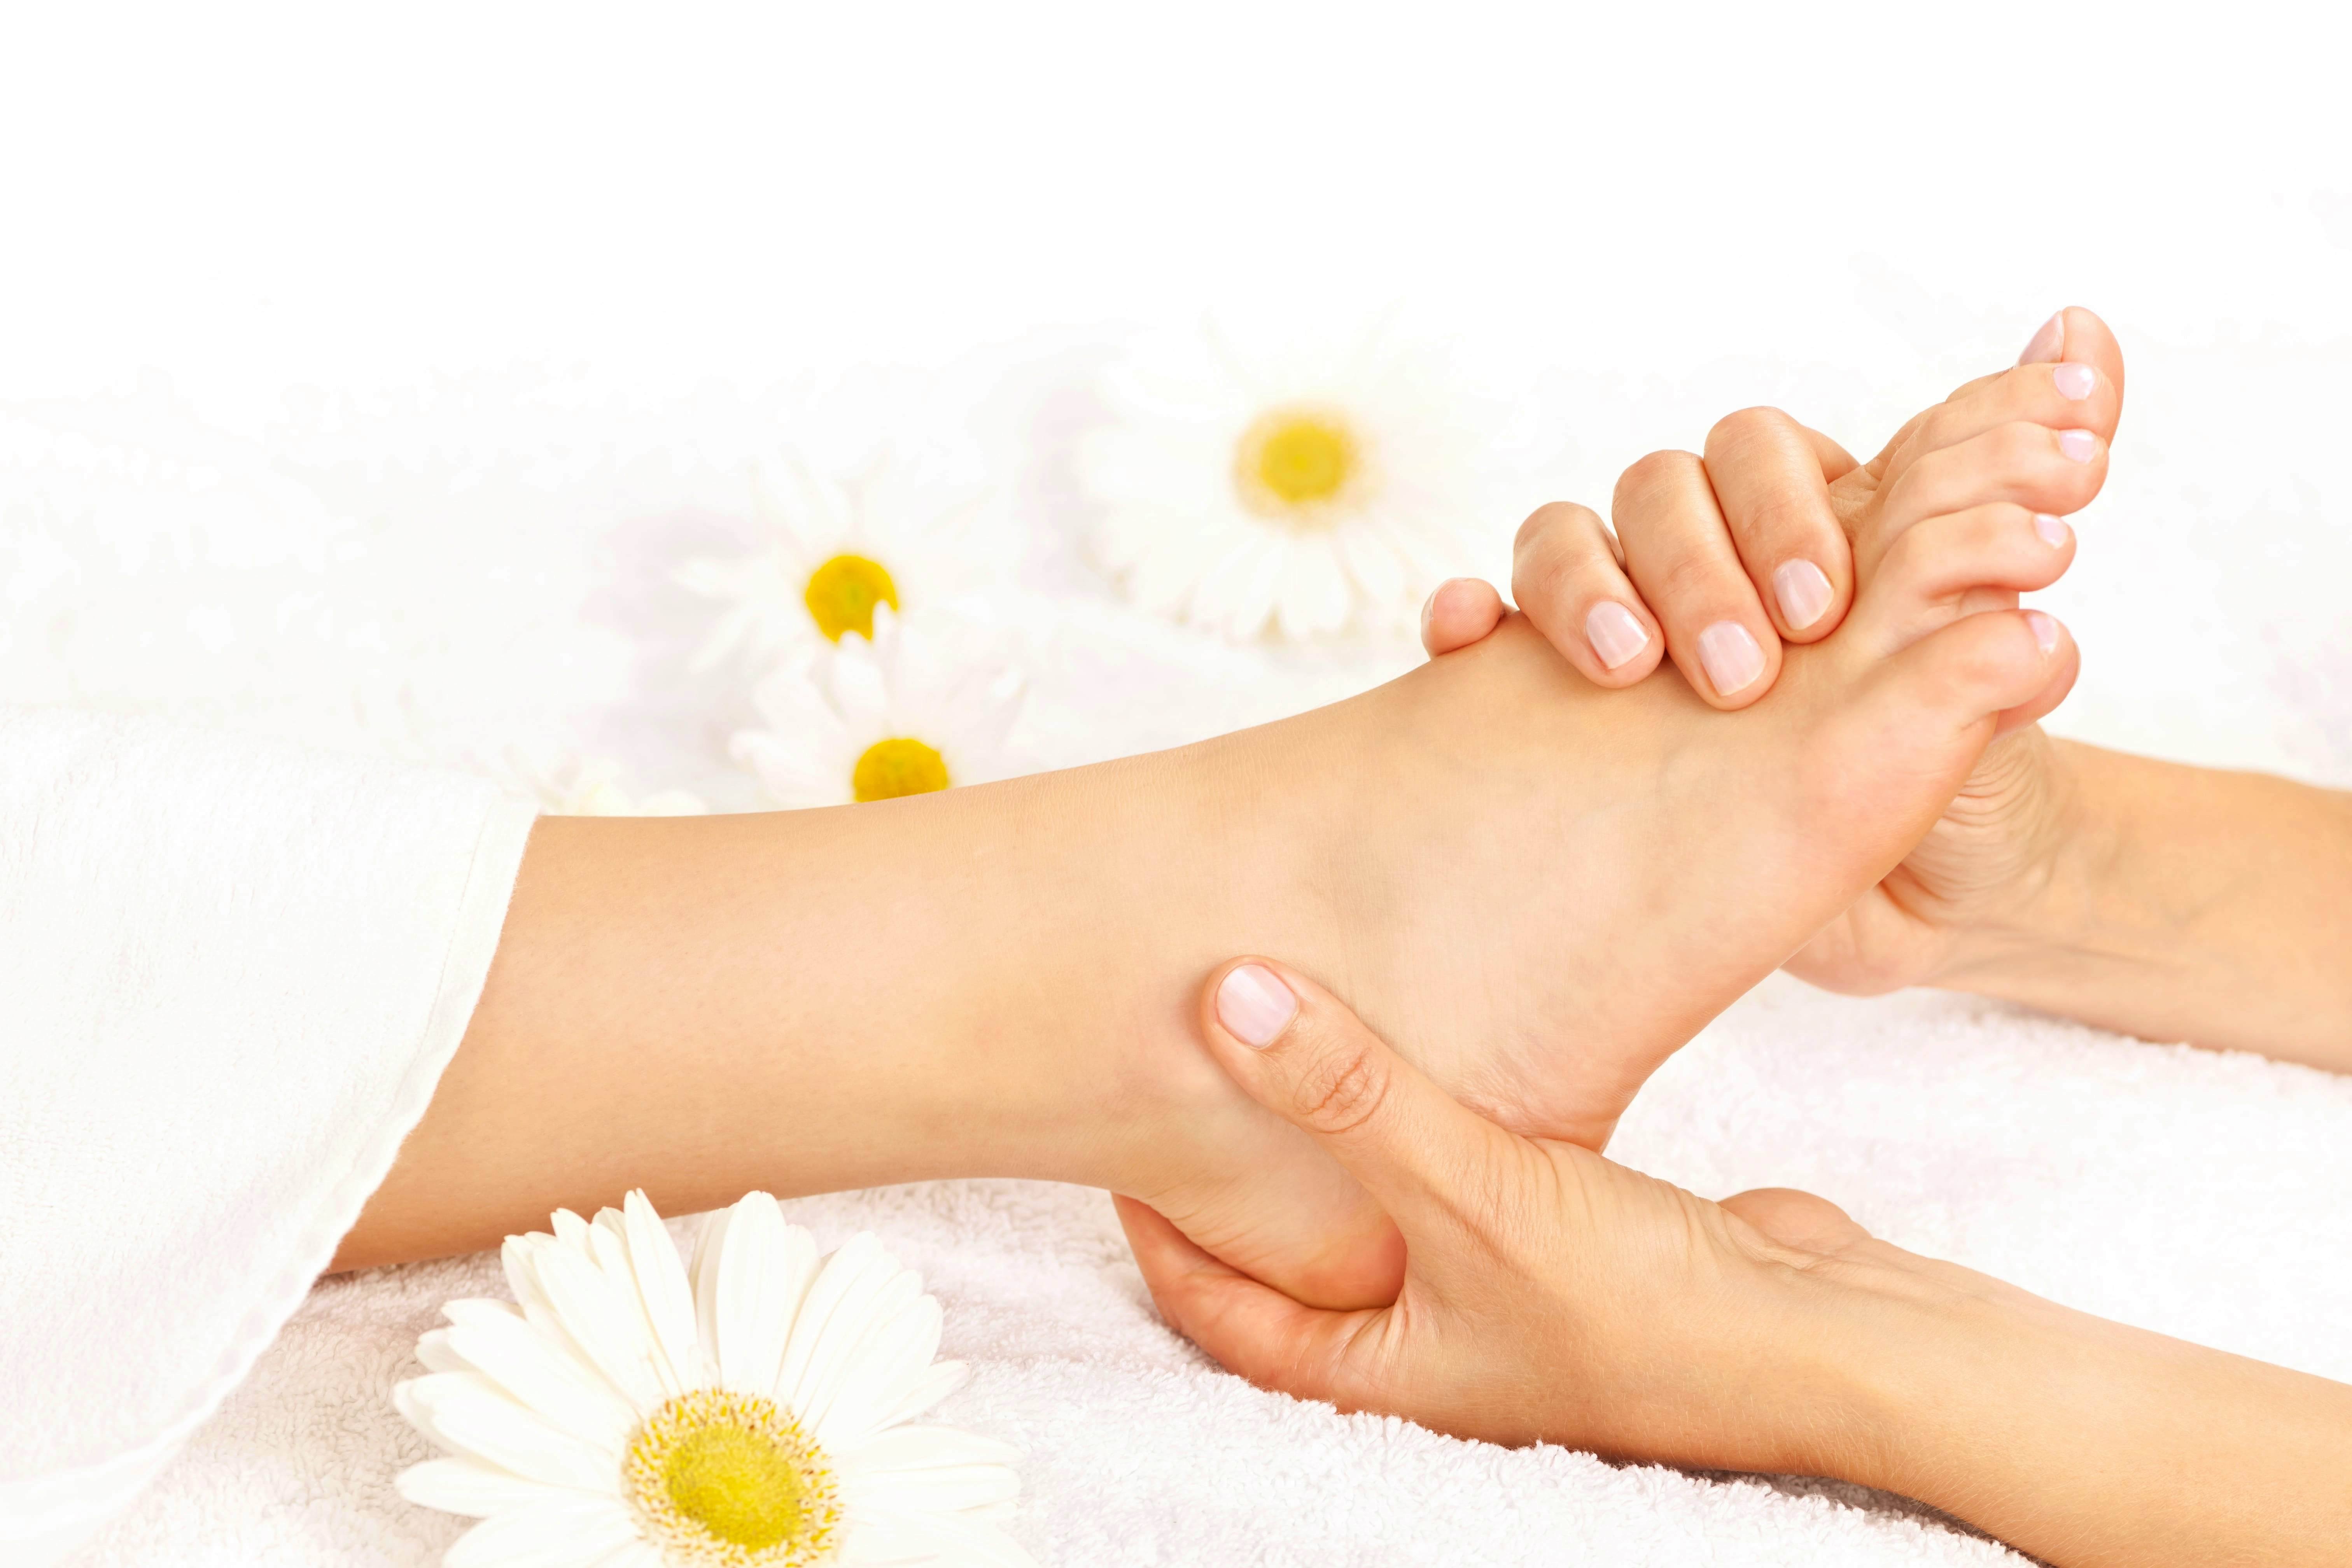 Orchid Foot & Reflexology Massage - 1 hour